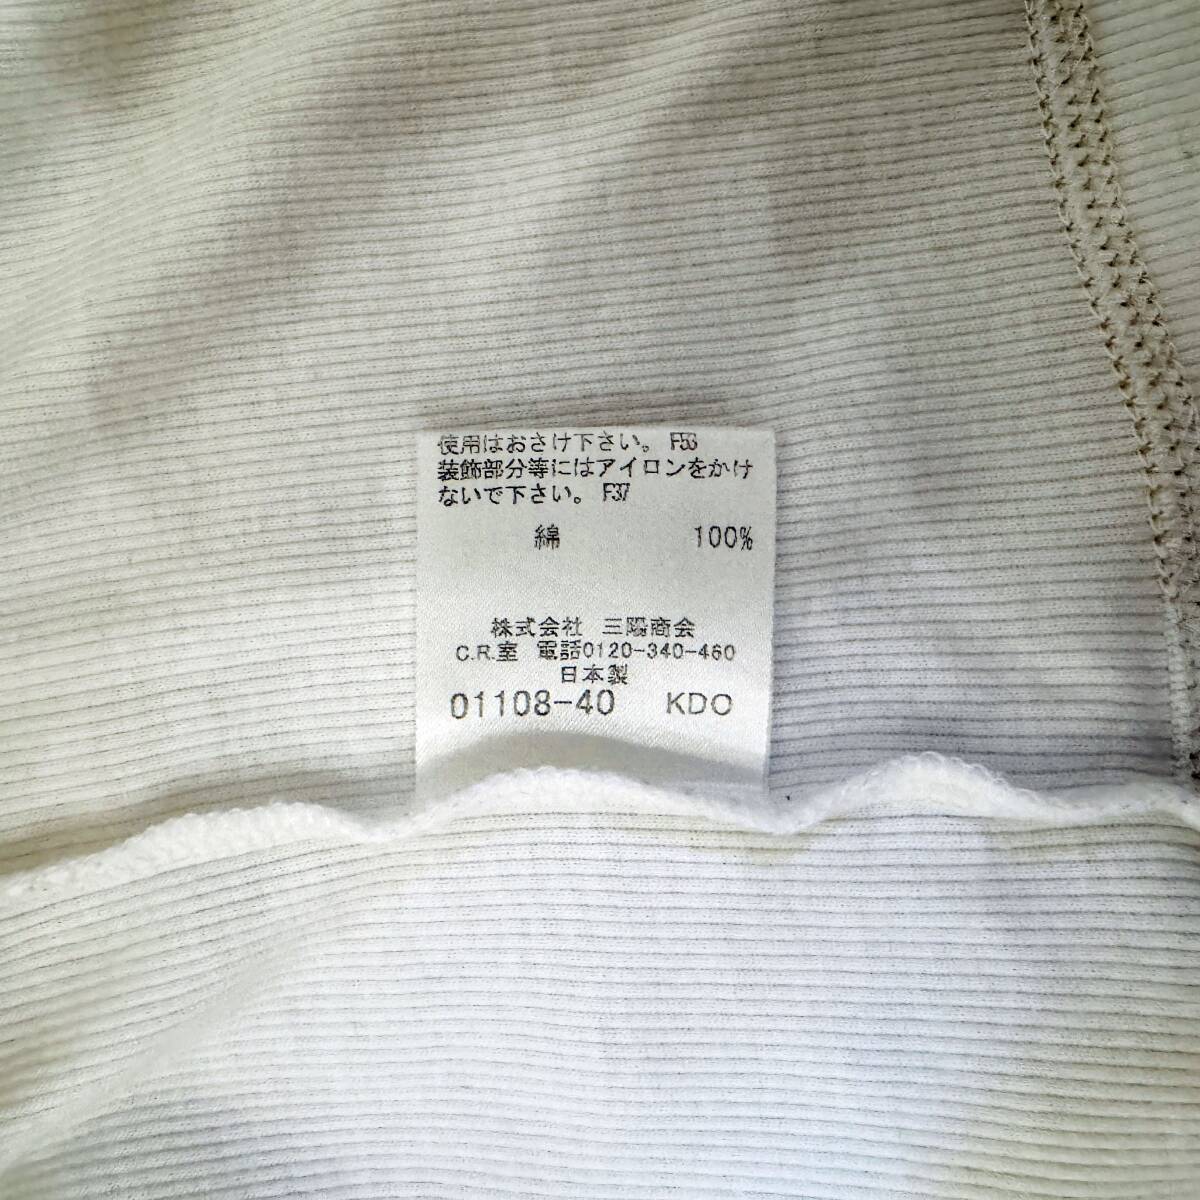  прекрасный товар редкость BURBERRY BLACK LABEL Burberry Black Label термический V шея футболка шланг вышивка белый золотой 3(L) сделано в Японии #2749